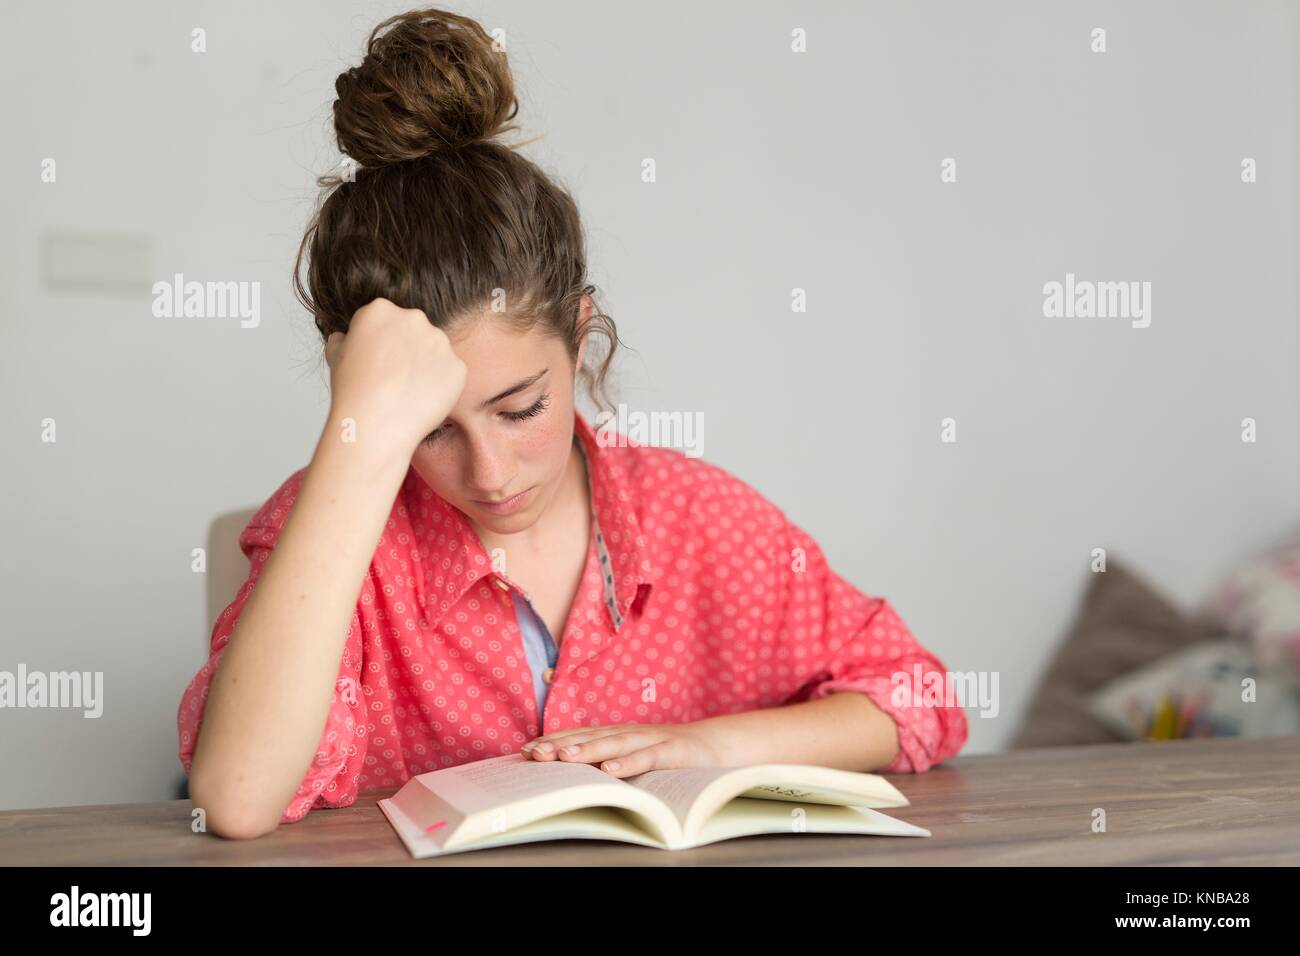 Teen Frau liest ein Buch. Horizontal gedreht mit Tageslicht durch ein Fenster betreten. Stockfoto